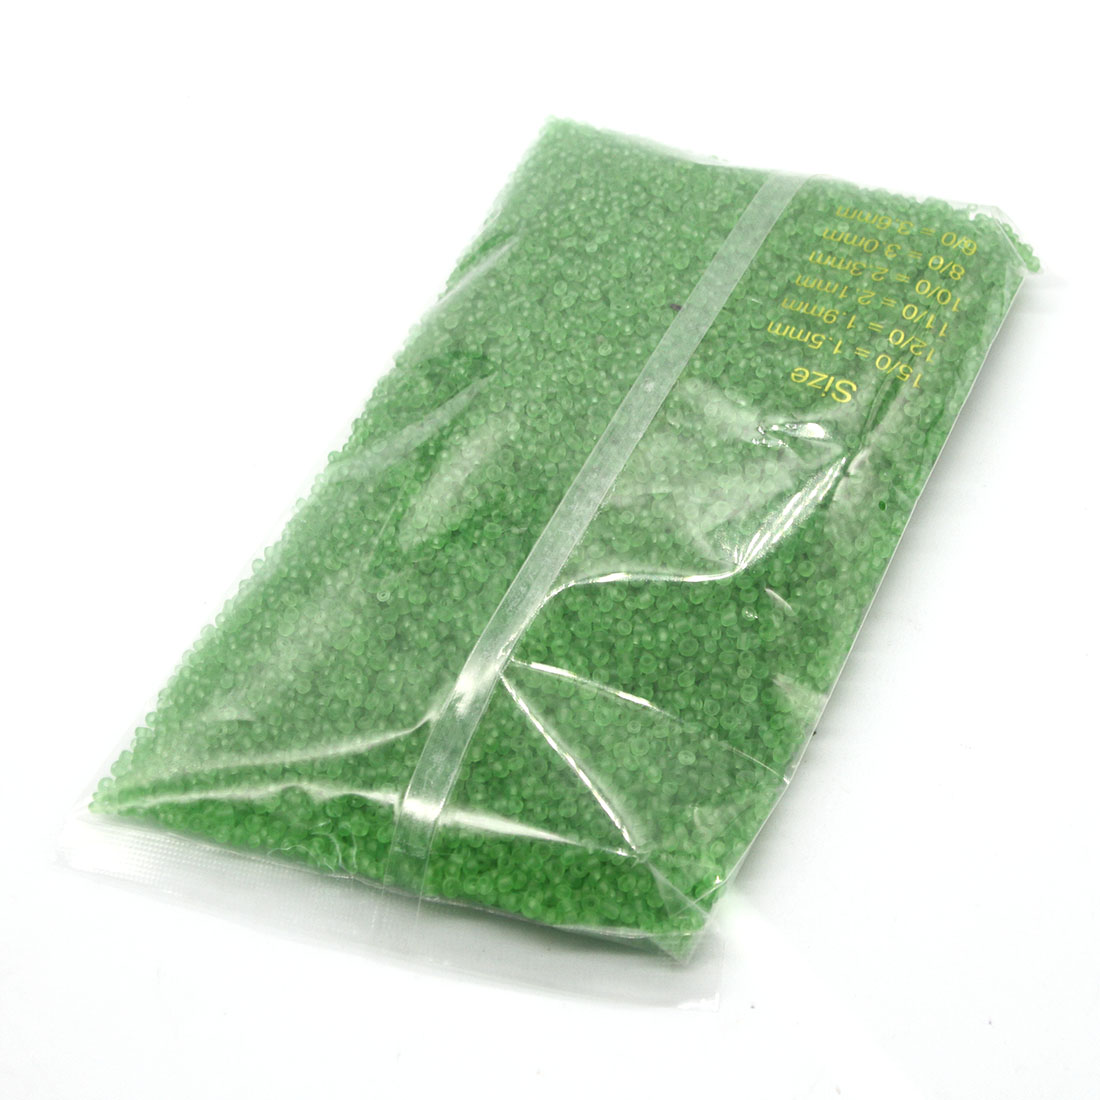 Apple green 4mm packs of 4500